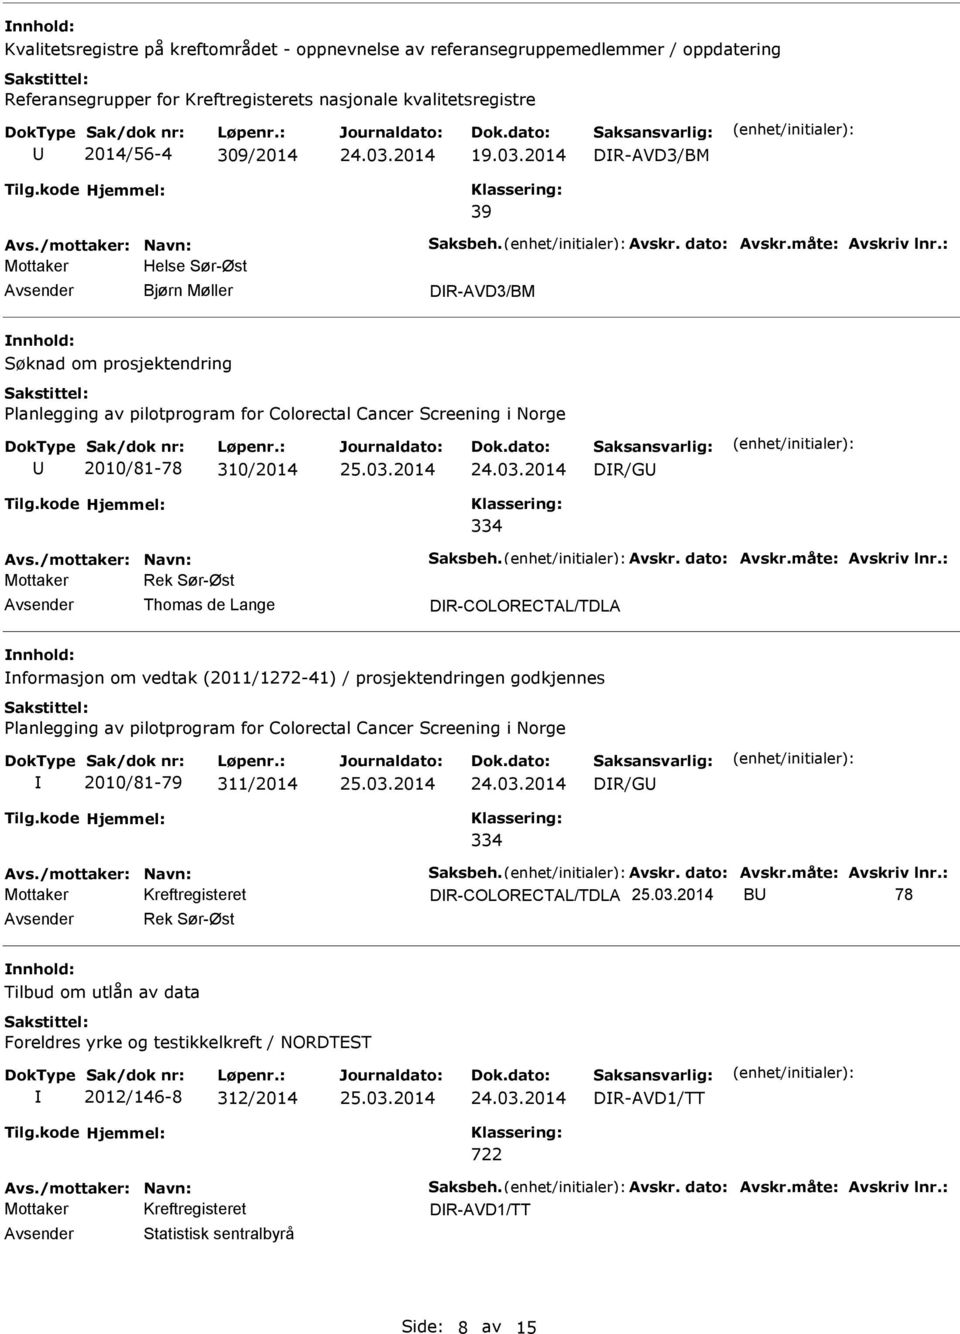 Thomas de Lange DR-COLORECTAL/TDLA nformasjon om vedtak (2011/1272-41) / prosjektendringen godkjennes Planlegging av pilotprogram for Colorectal Cancer Screening i Norge 2010/81-79 311/2014